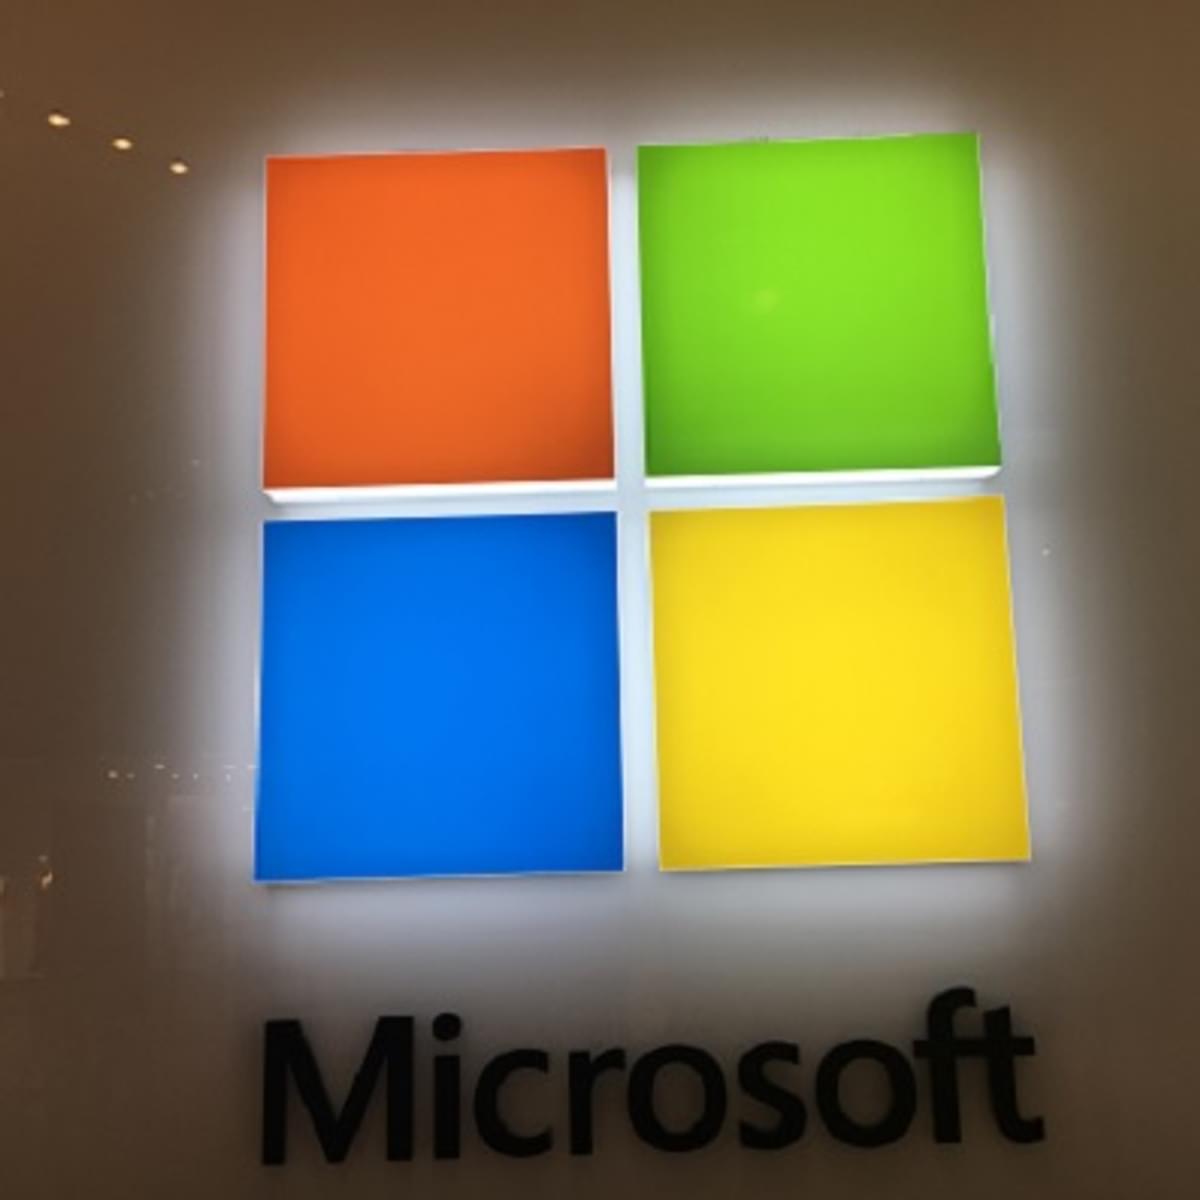 Duitse toezichthouder onderzoekt of Microsoft te dominante marktpositie heeft image